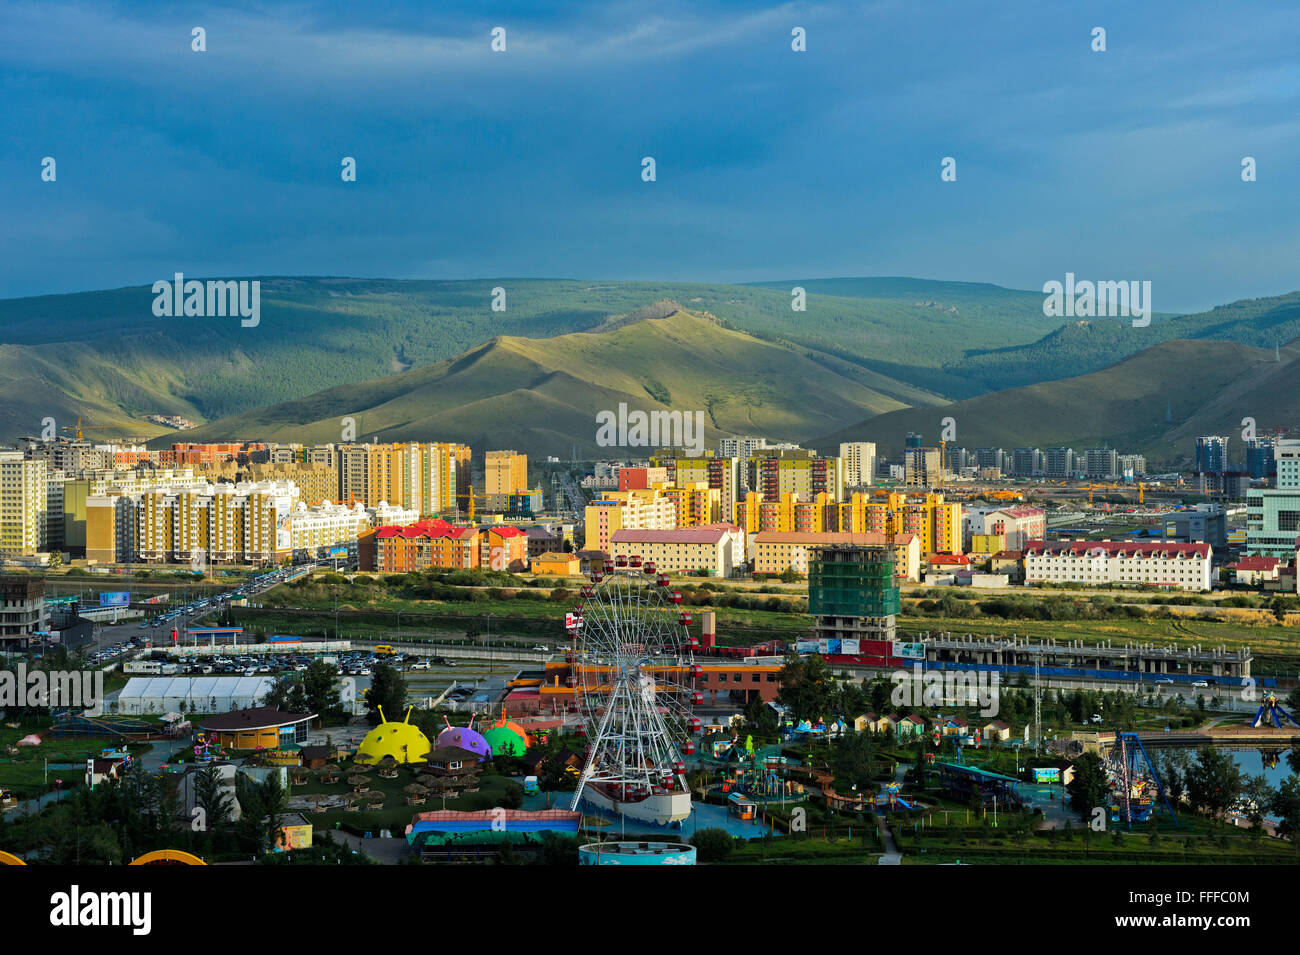 Le parc d'attractions nationales, derrière le quartier moderne récemment construit, Ulan Bator, Mongolie Banque D'Images